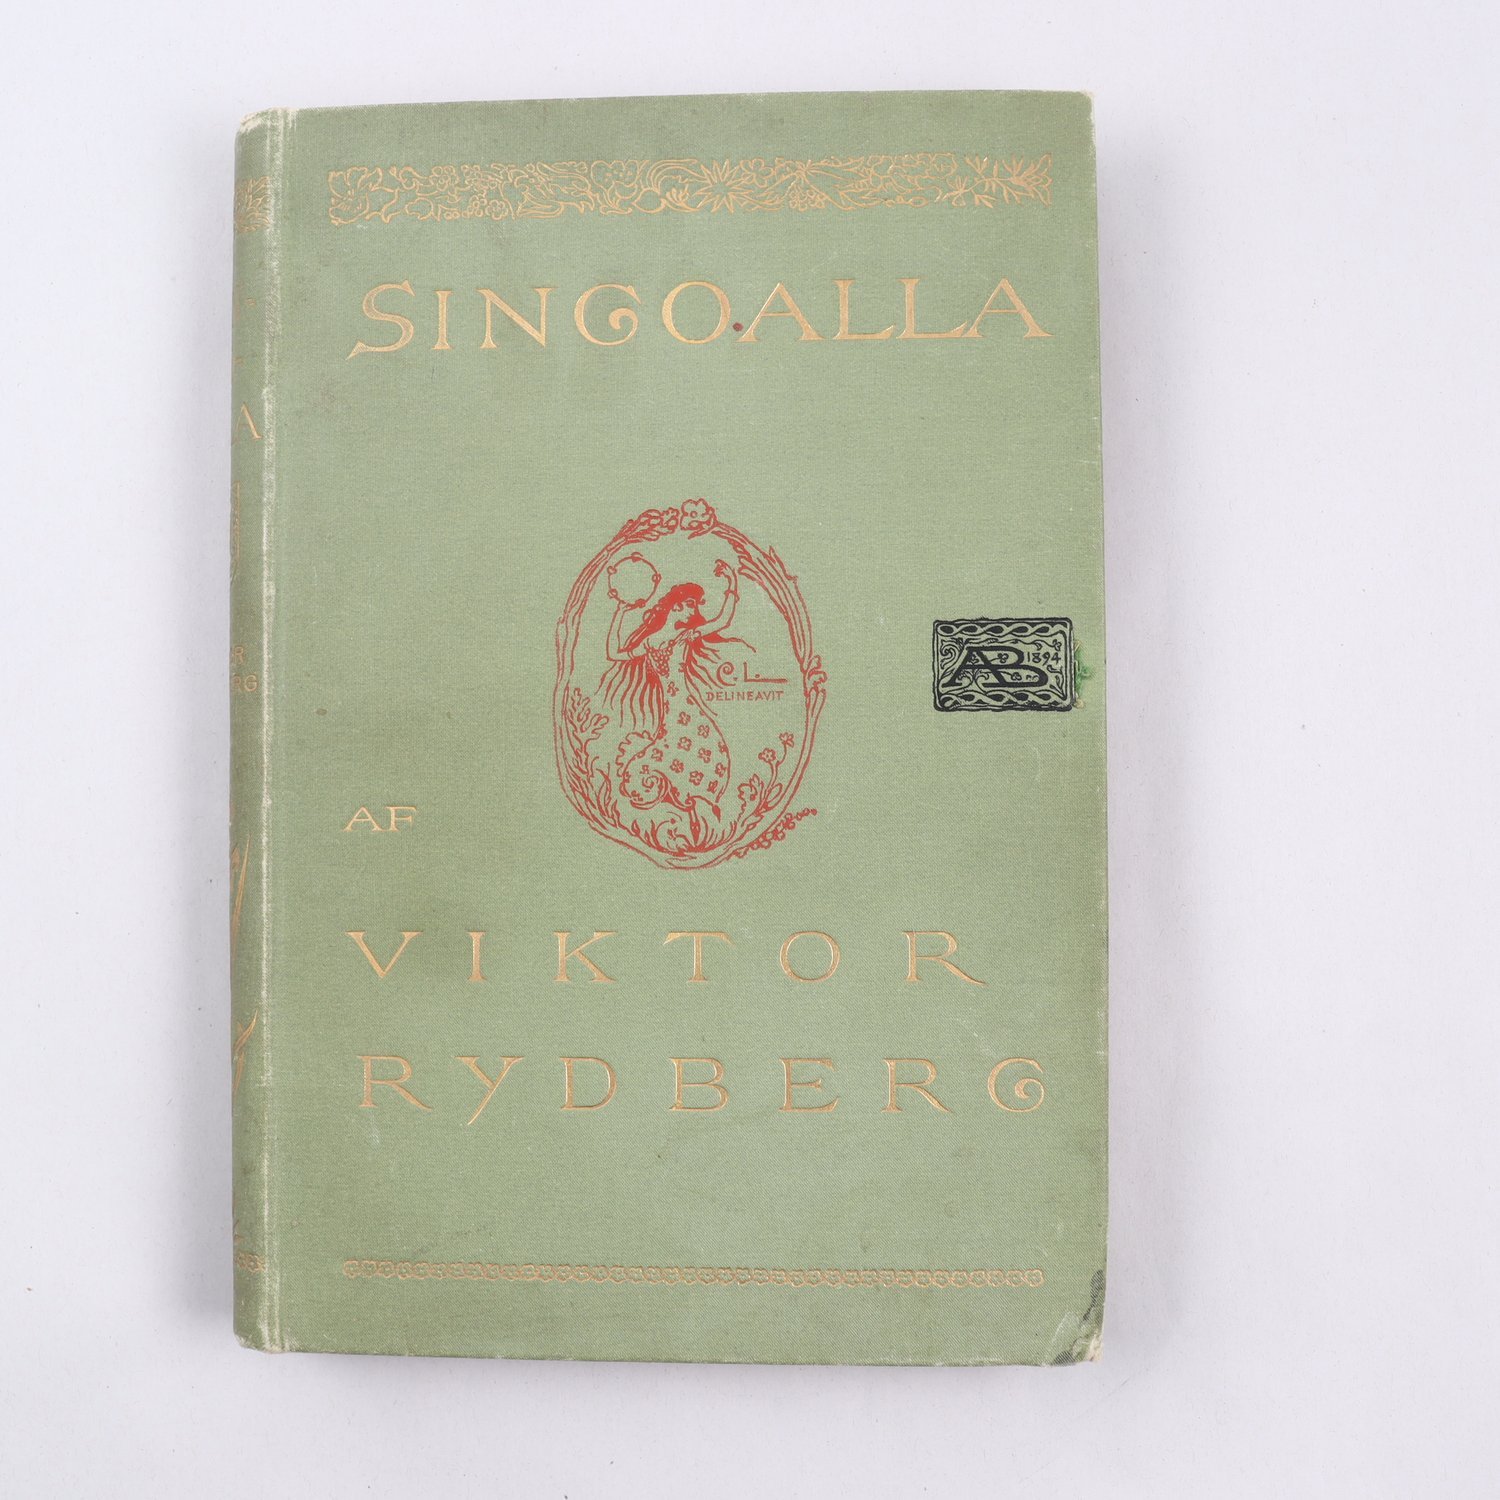 Singoalla af Viktor Rydberg, 1894, illustrerad av Carl Larsson